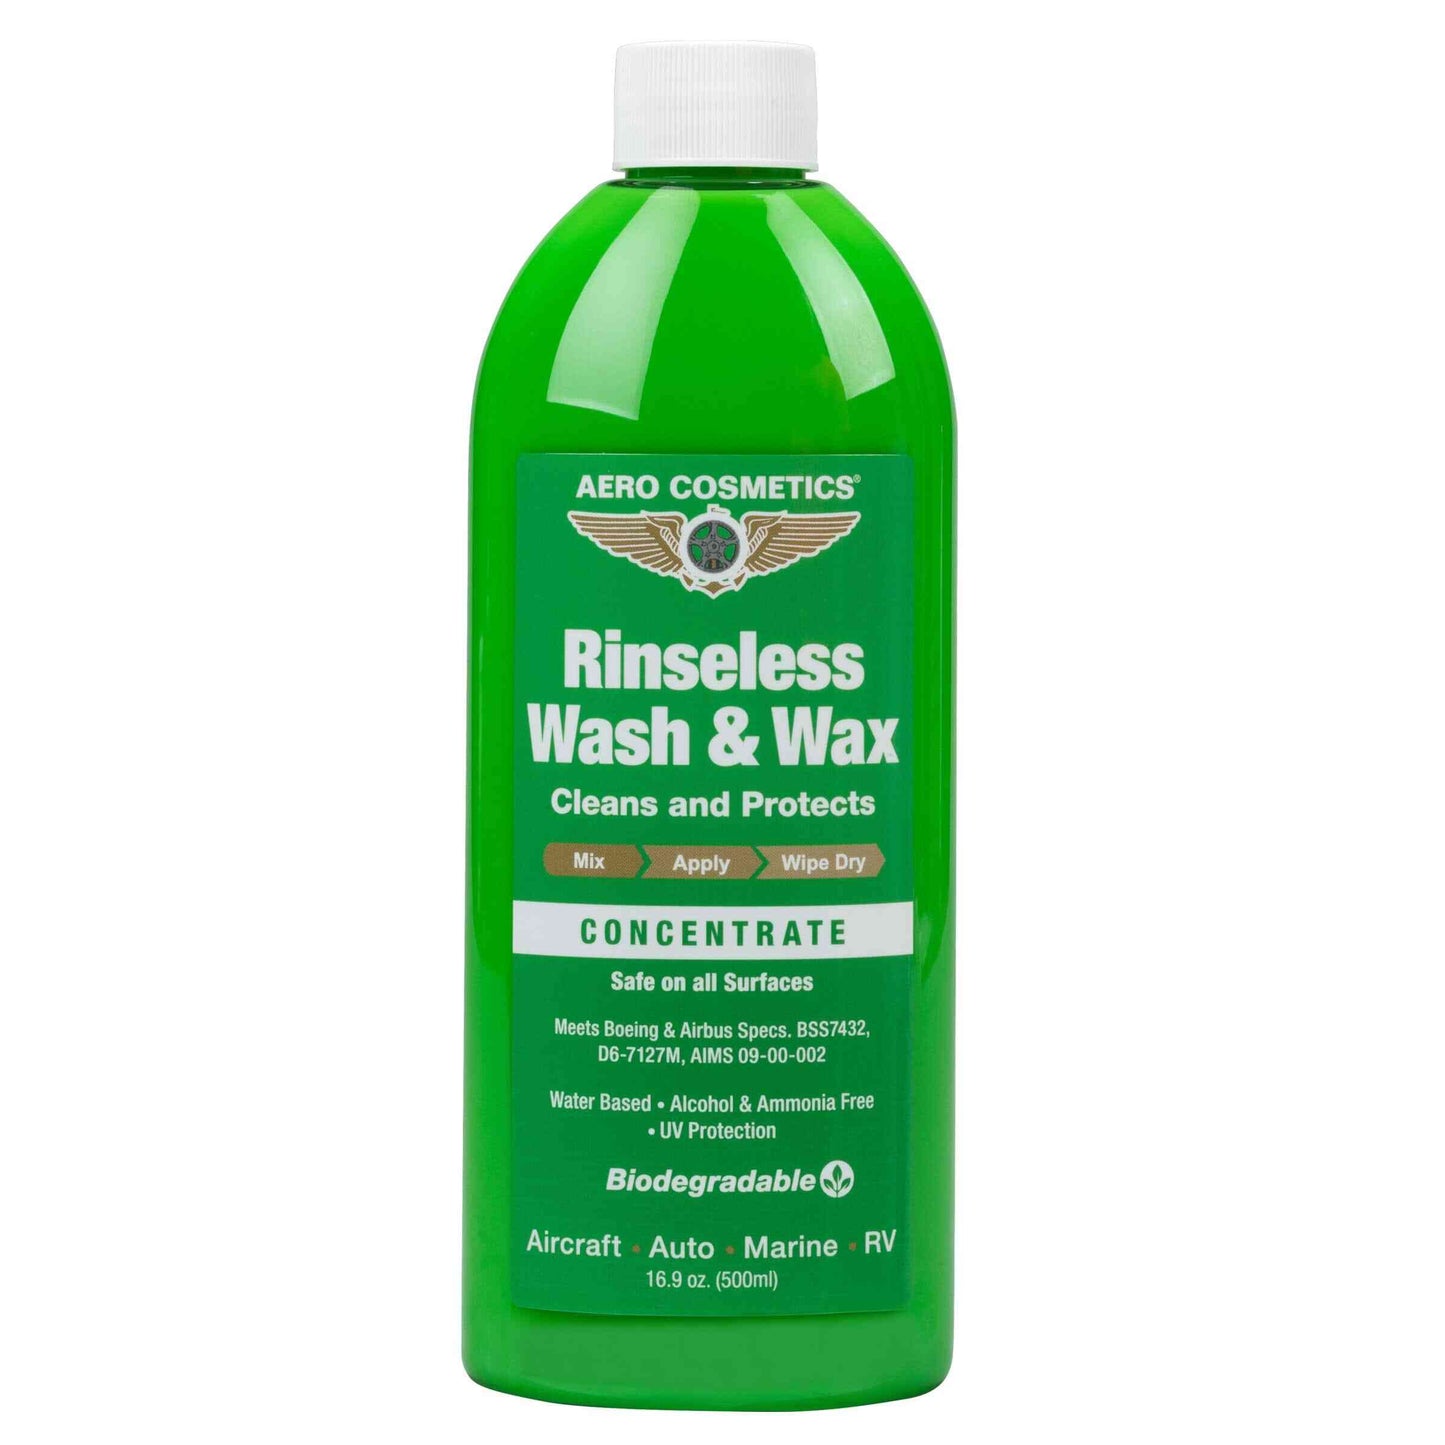 Rinseless Car Wash and Wax 1 Gallon - Rinse Free Car Wash & Shine, Waterless Car Wash